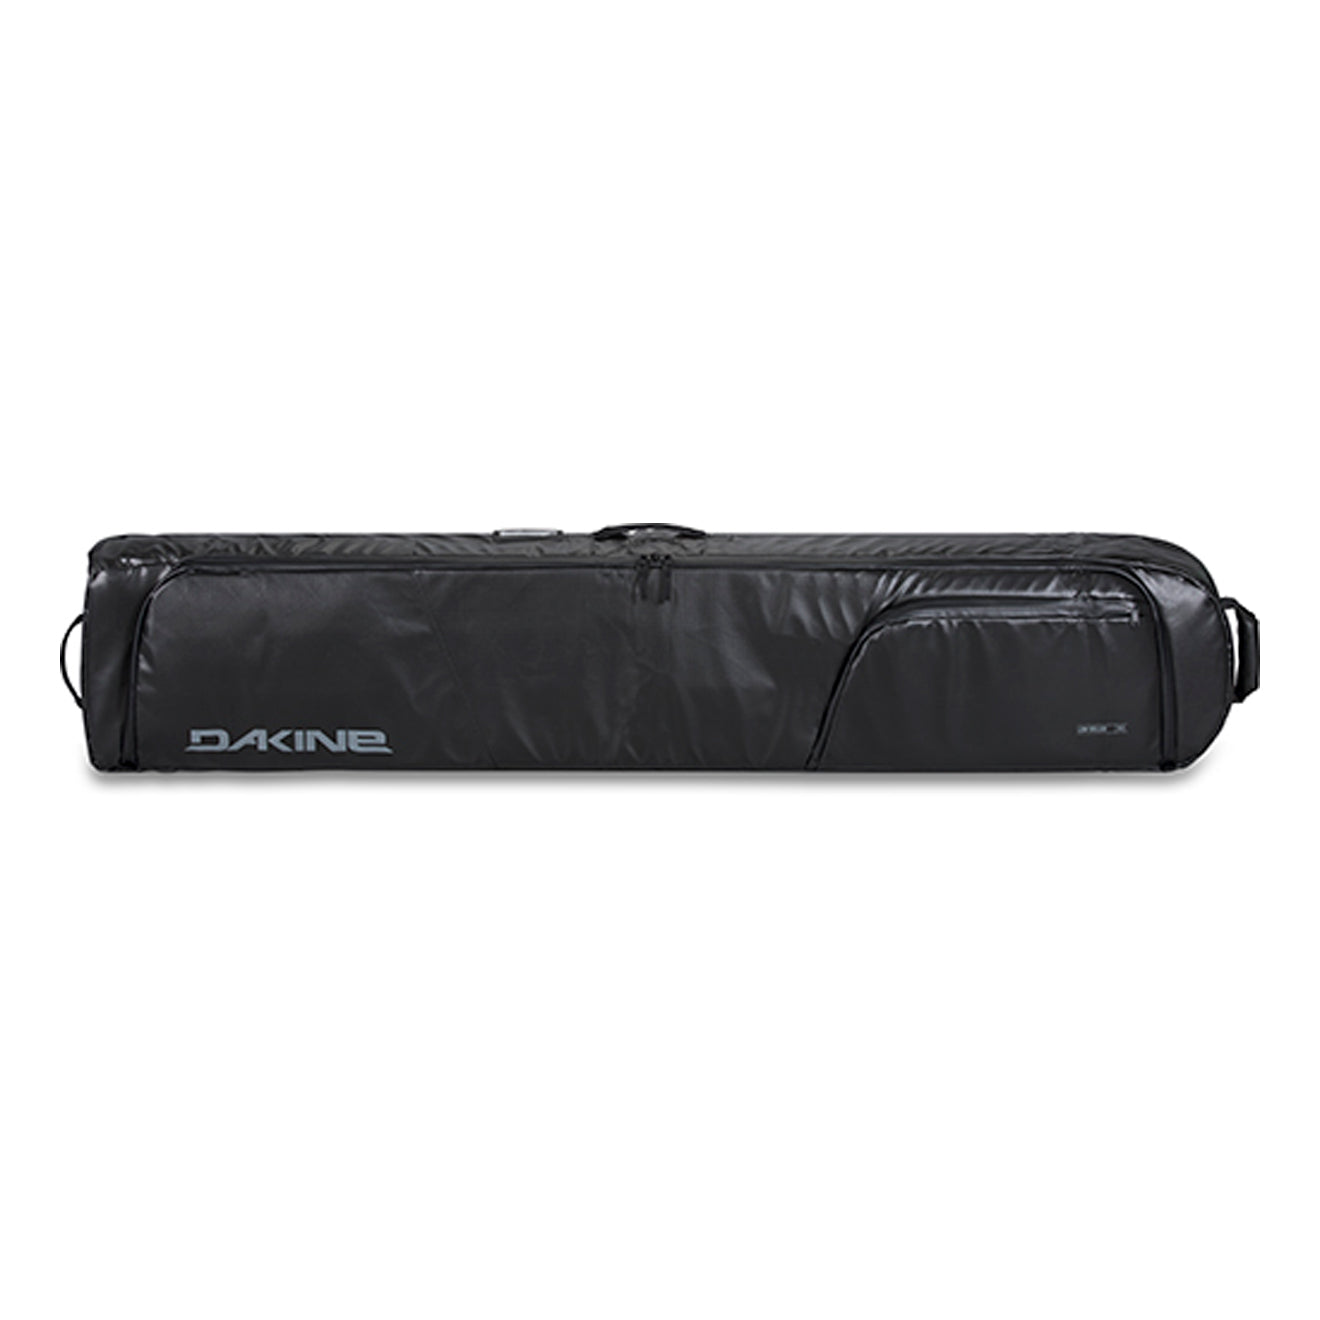 Low Roller Snowboard Bag - Black Coated - 165cm